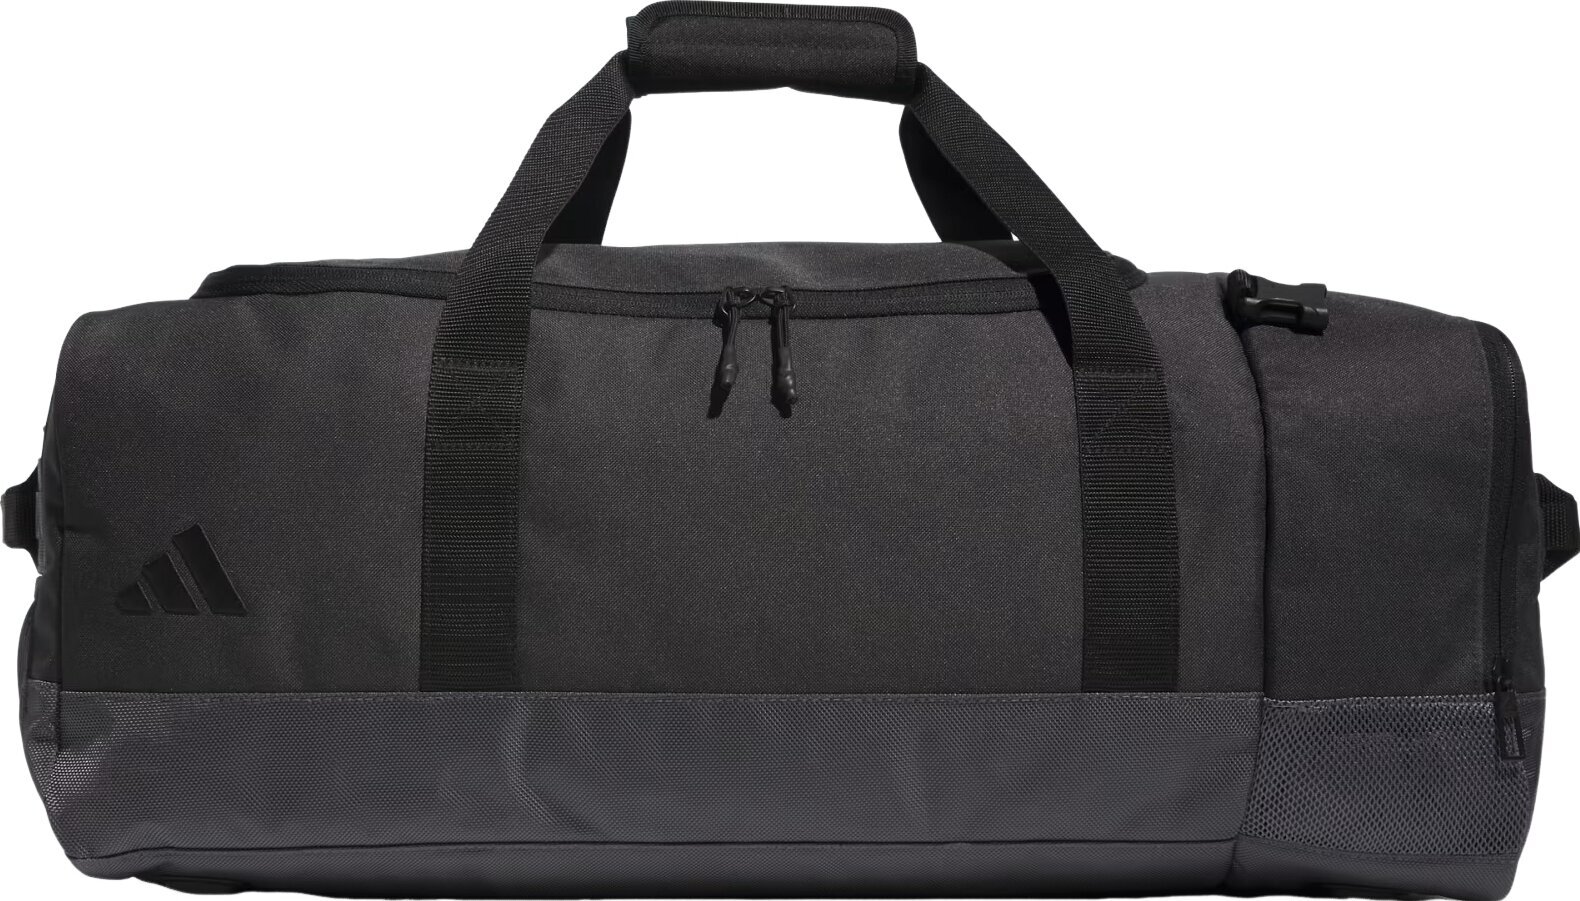 Lifestyle sac à dos / Sac Adidas Hybrid Duffle Bag Grey 55 L Sac de sport